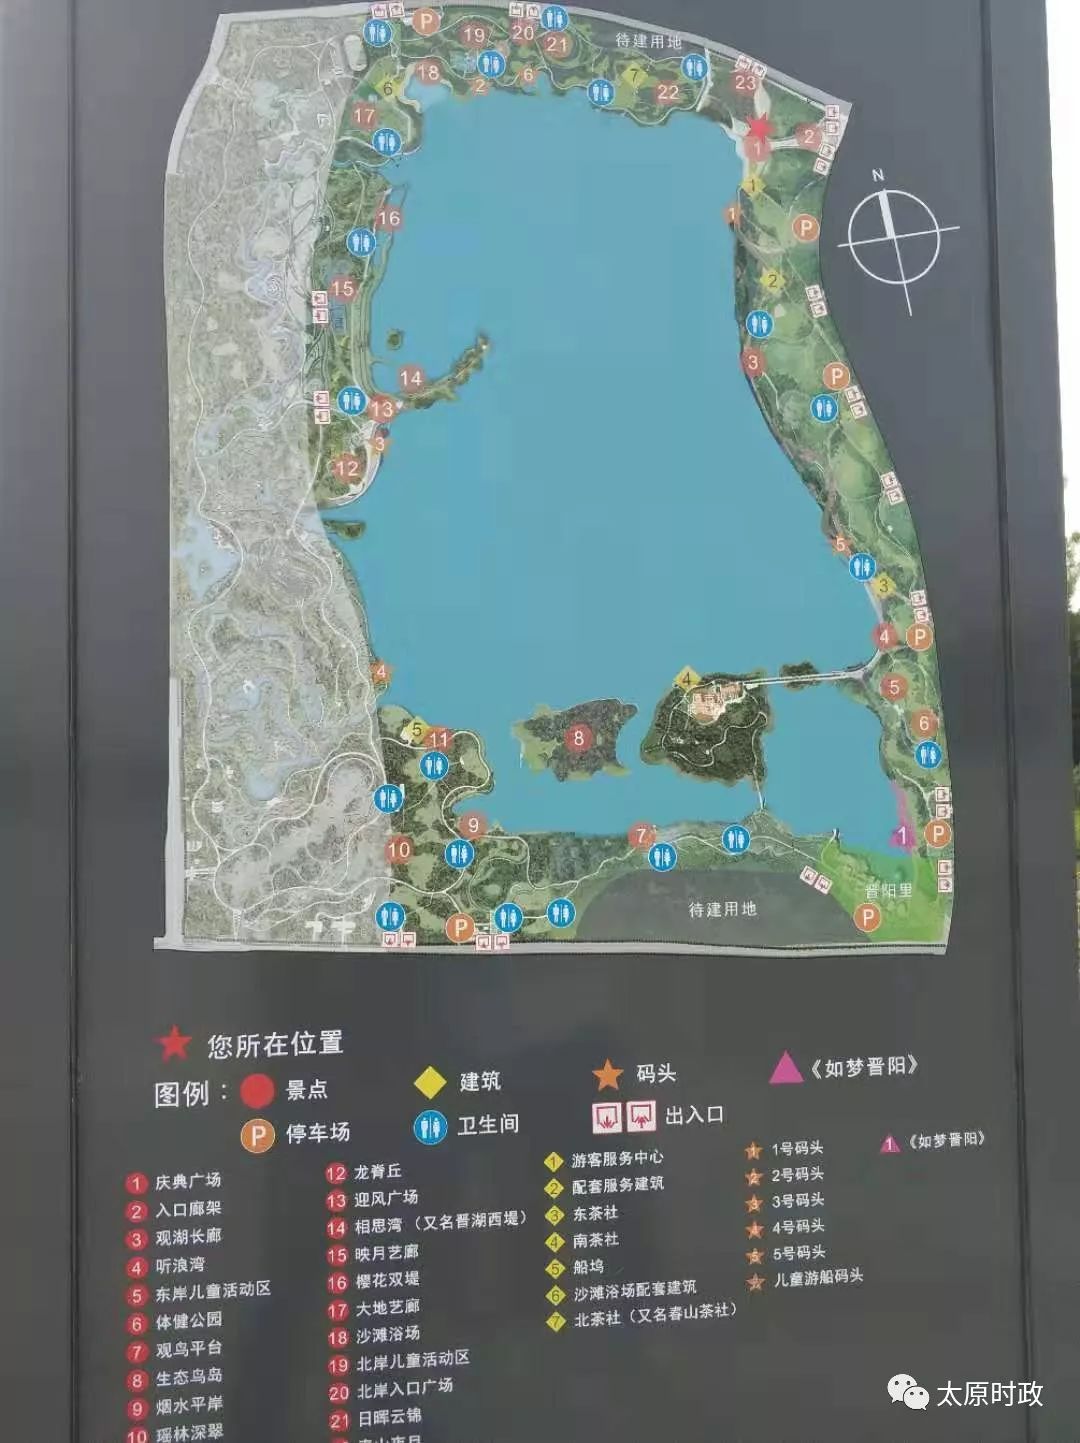 晋阳湖公园示意图图片